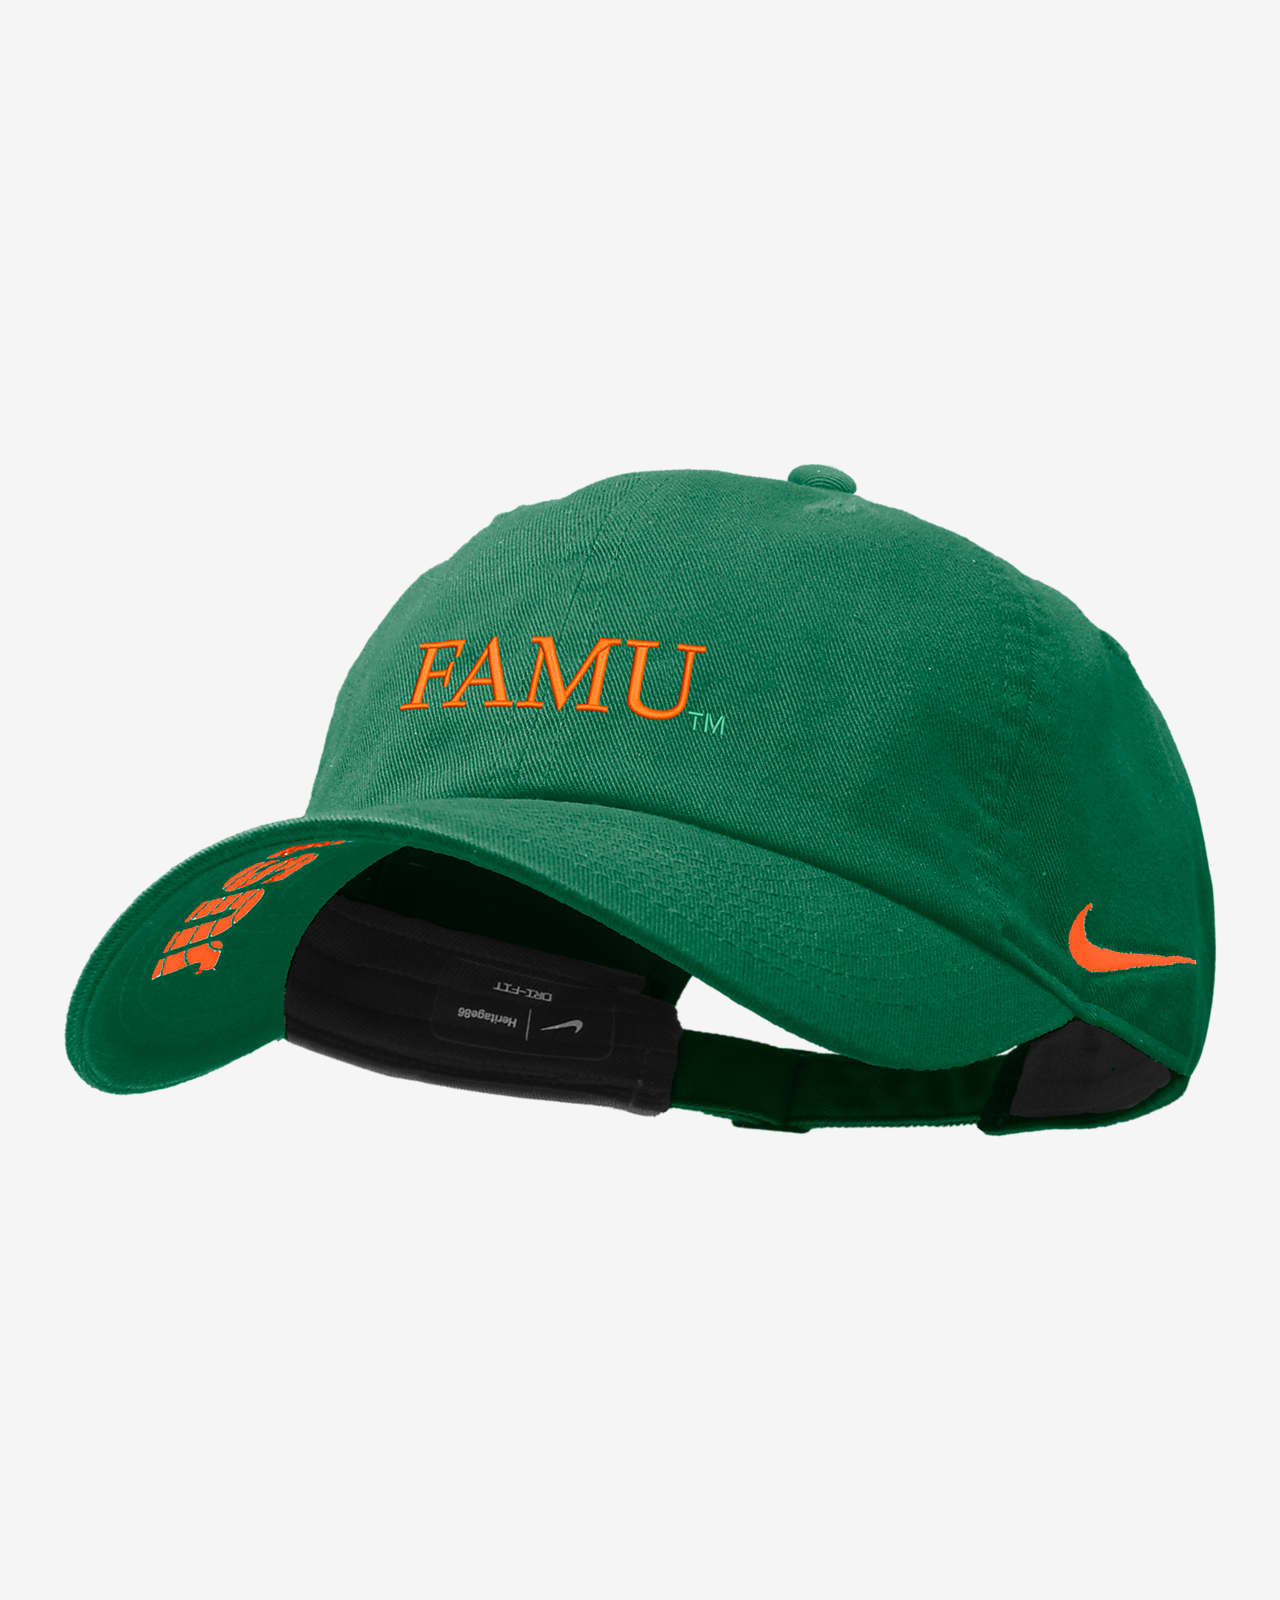 FAMU Nike College Adjustable Cap